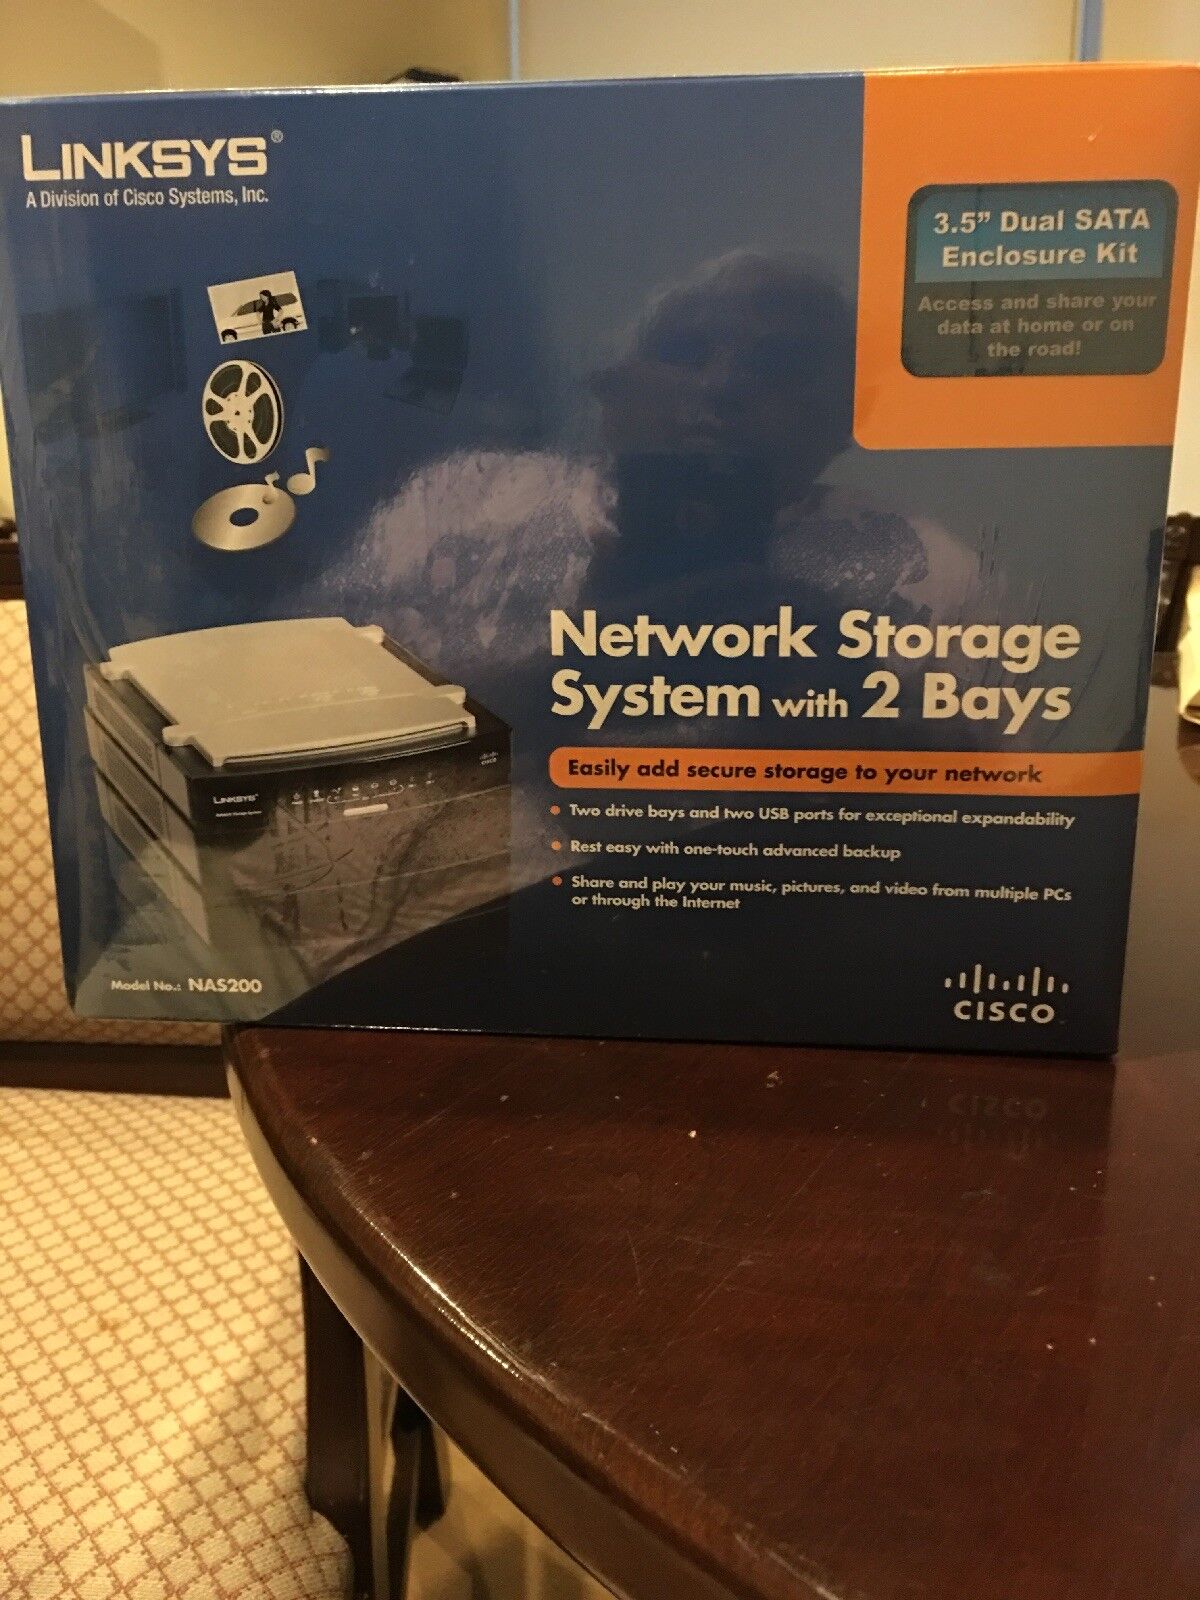 $1500 Brand New Cisco-Linksys Network Storage System with 2 Bays